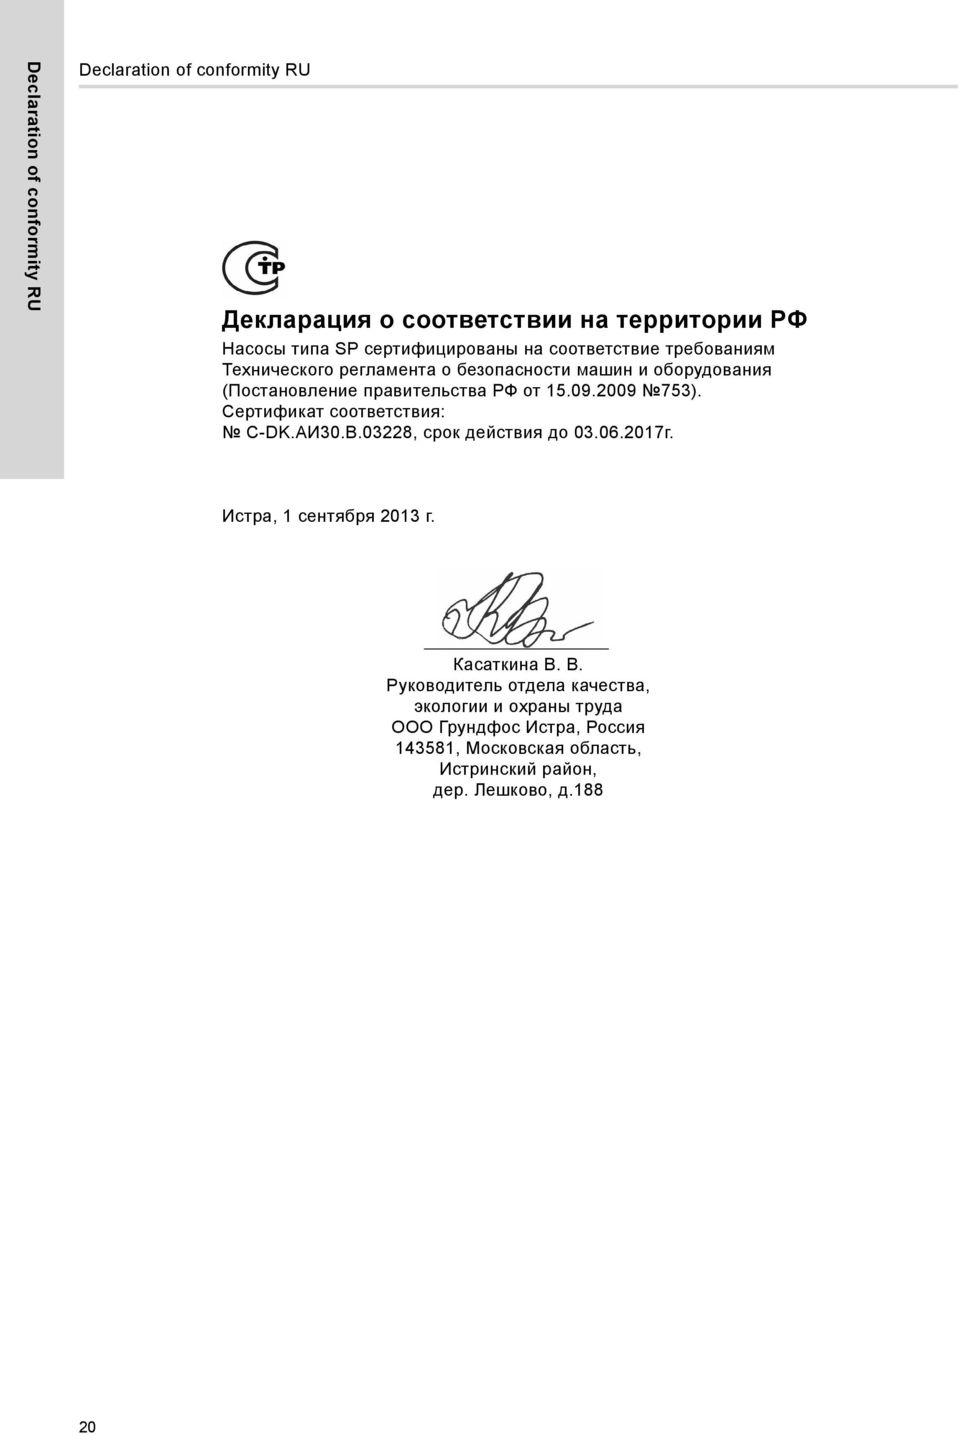 2009 753). Сертификат соответствия: C-DK.АИ30.В.03228, срок действия до 03.06.2017г. Истра, 1 сентября 2013 г. Касаткина В.